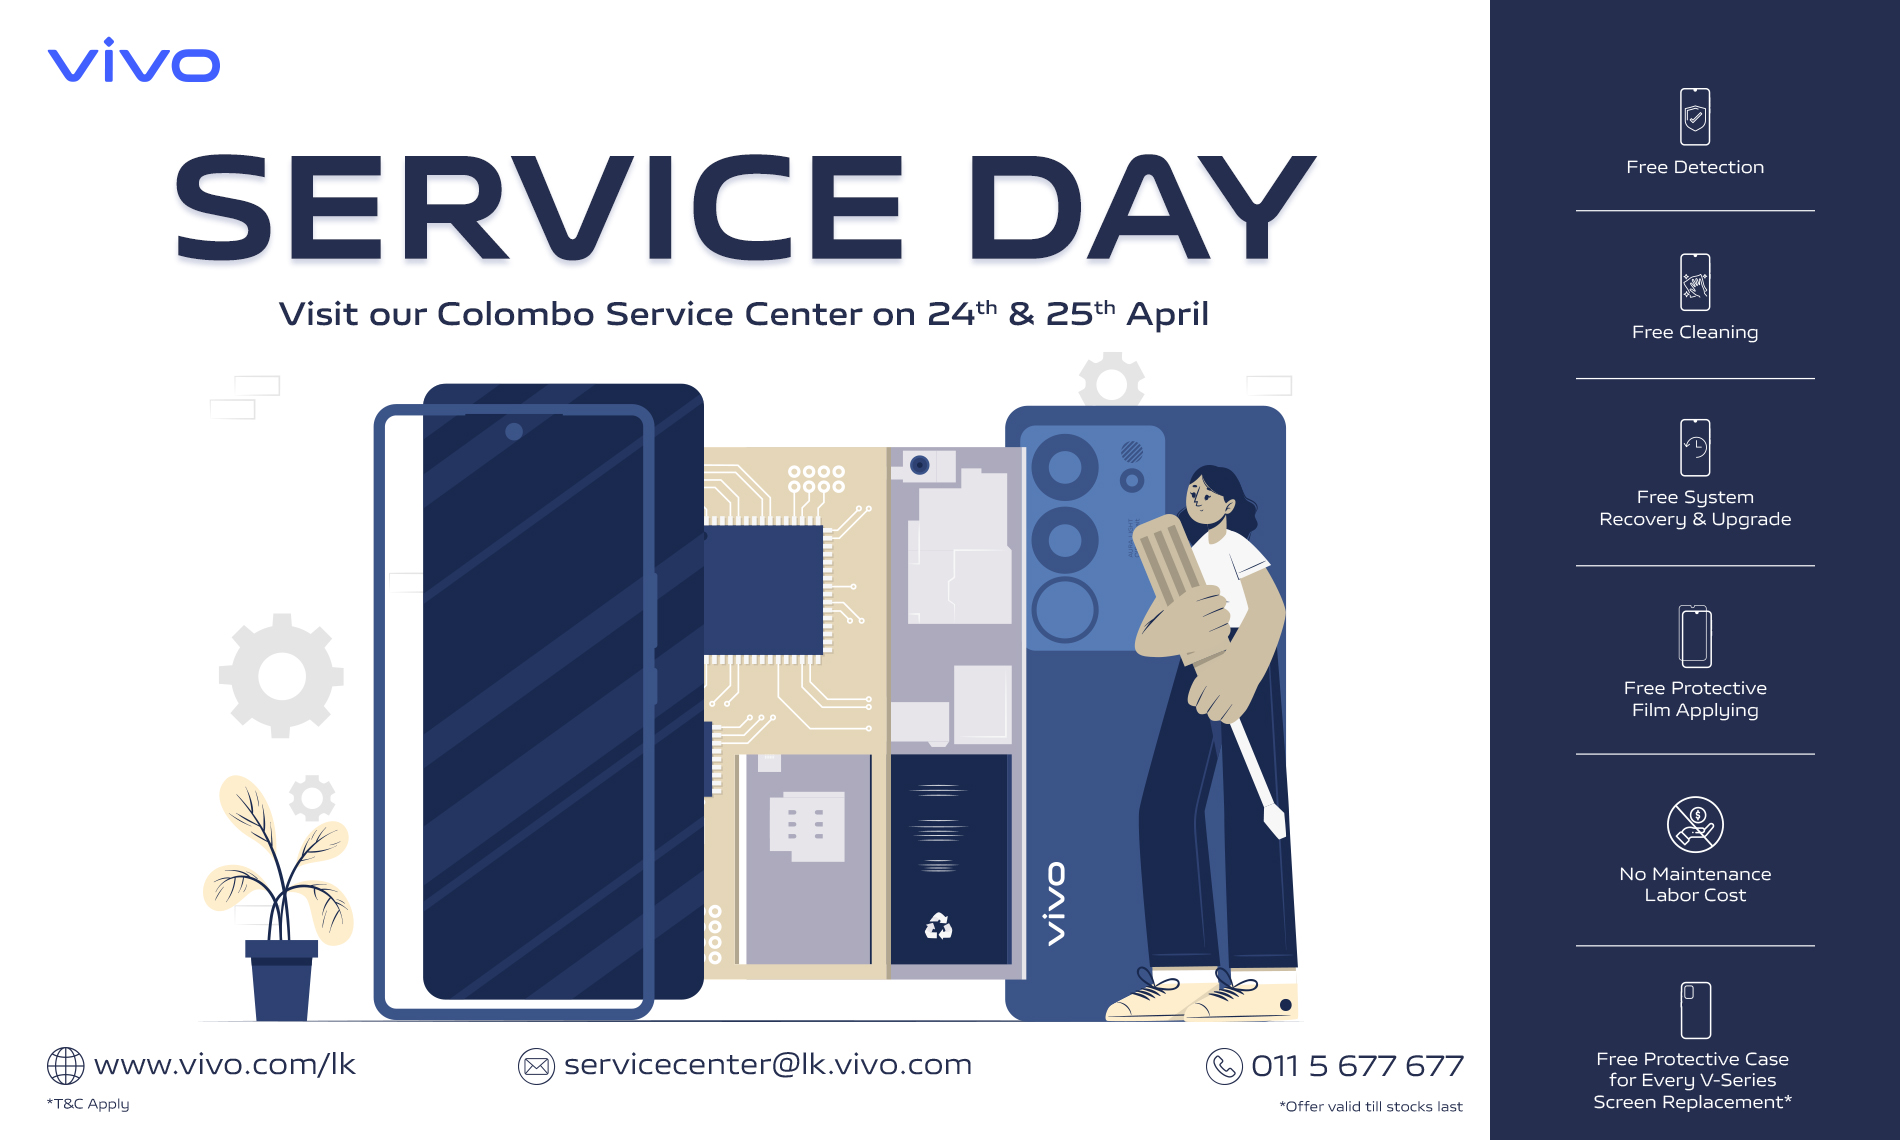 Enjoy vivo Service Day in April